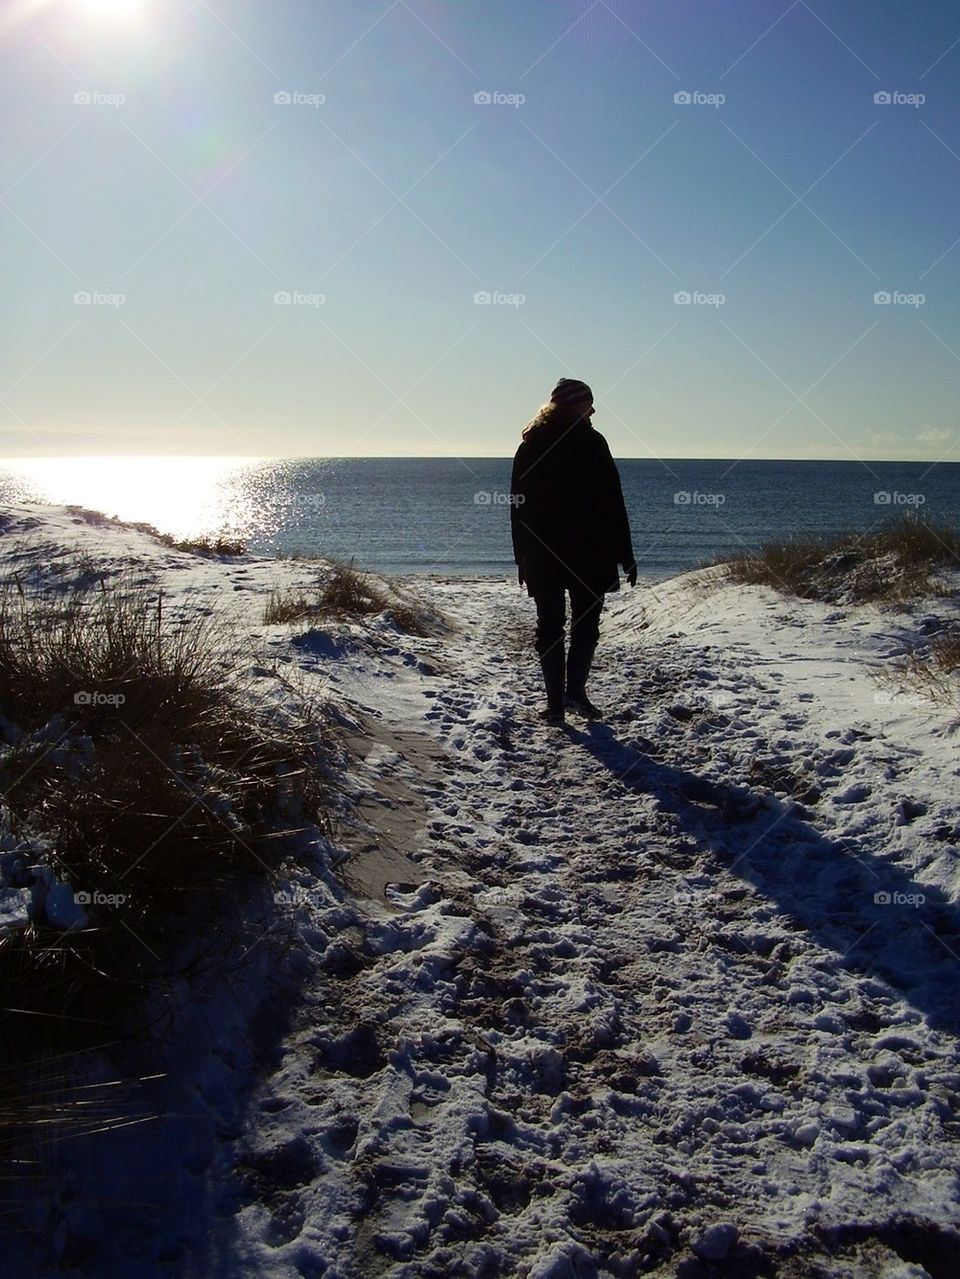 Taking a walk in the winterlandscape